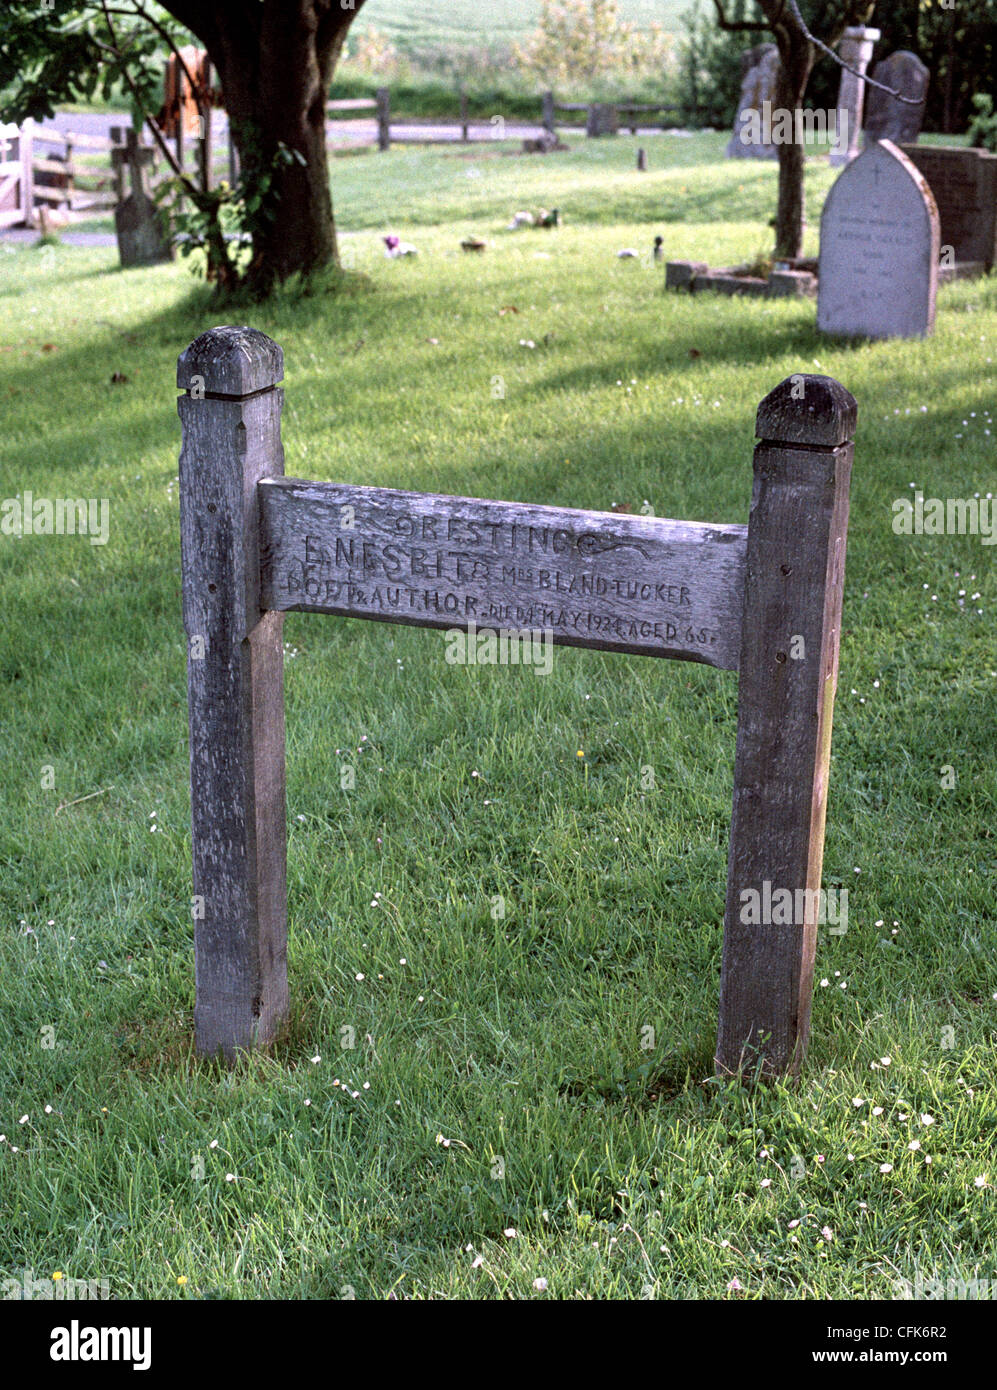 E. Nesbit - grave Stock Photo